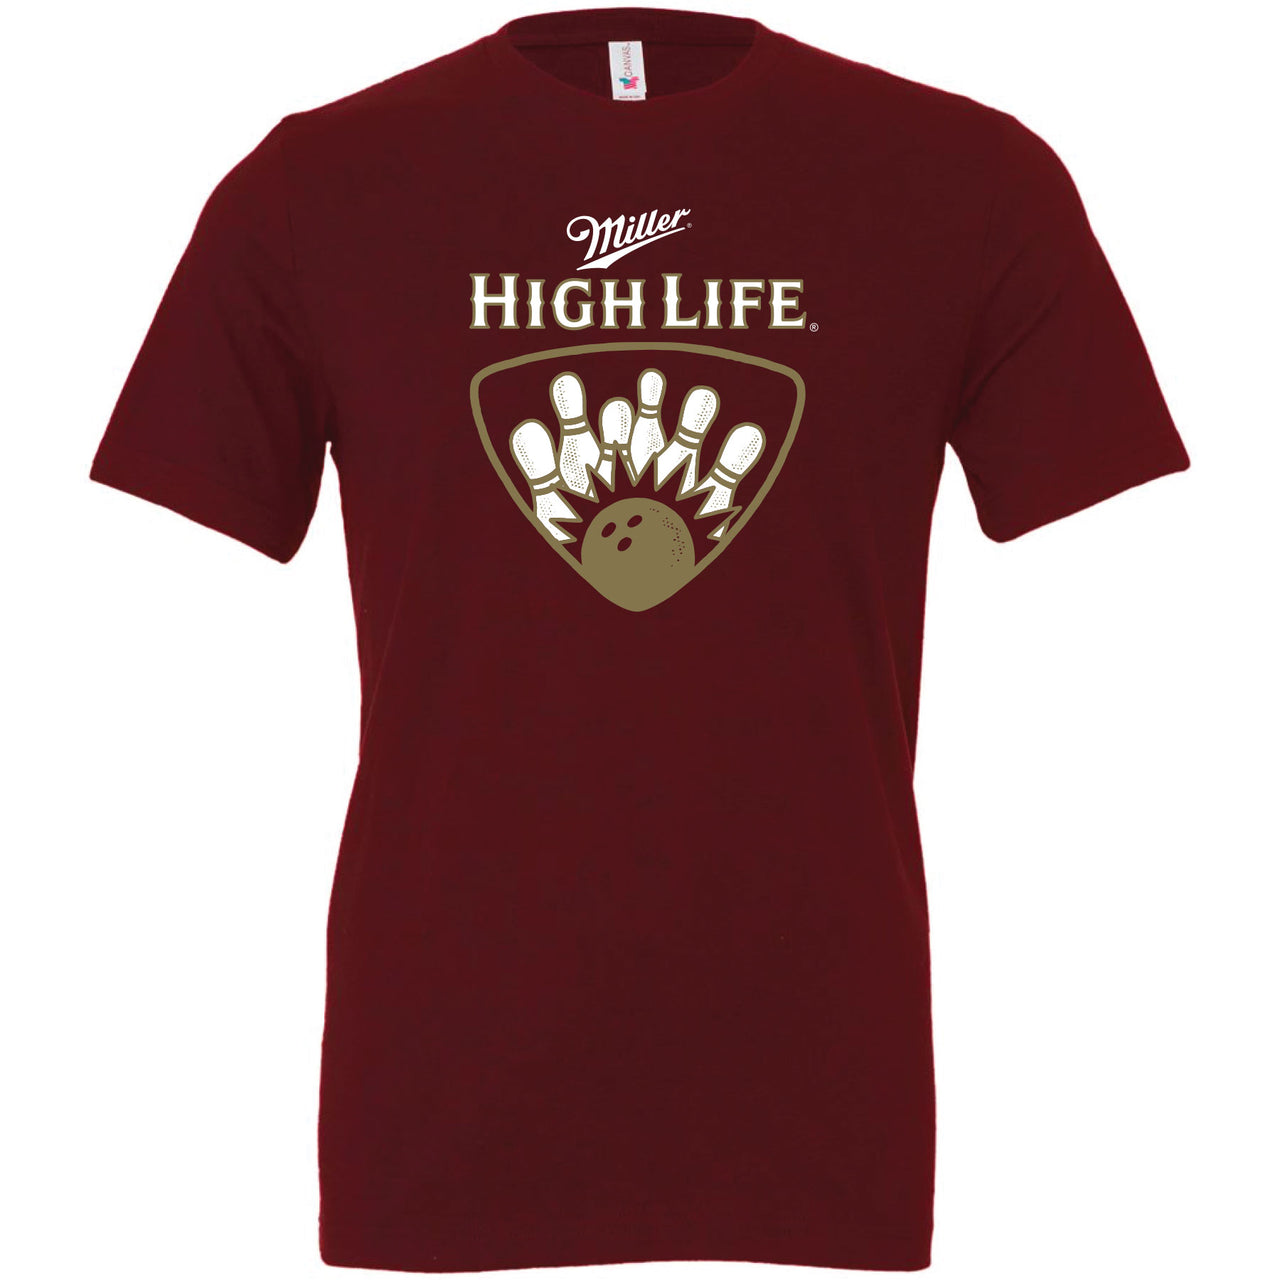 Miller High Life - Bowling League T-shirt